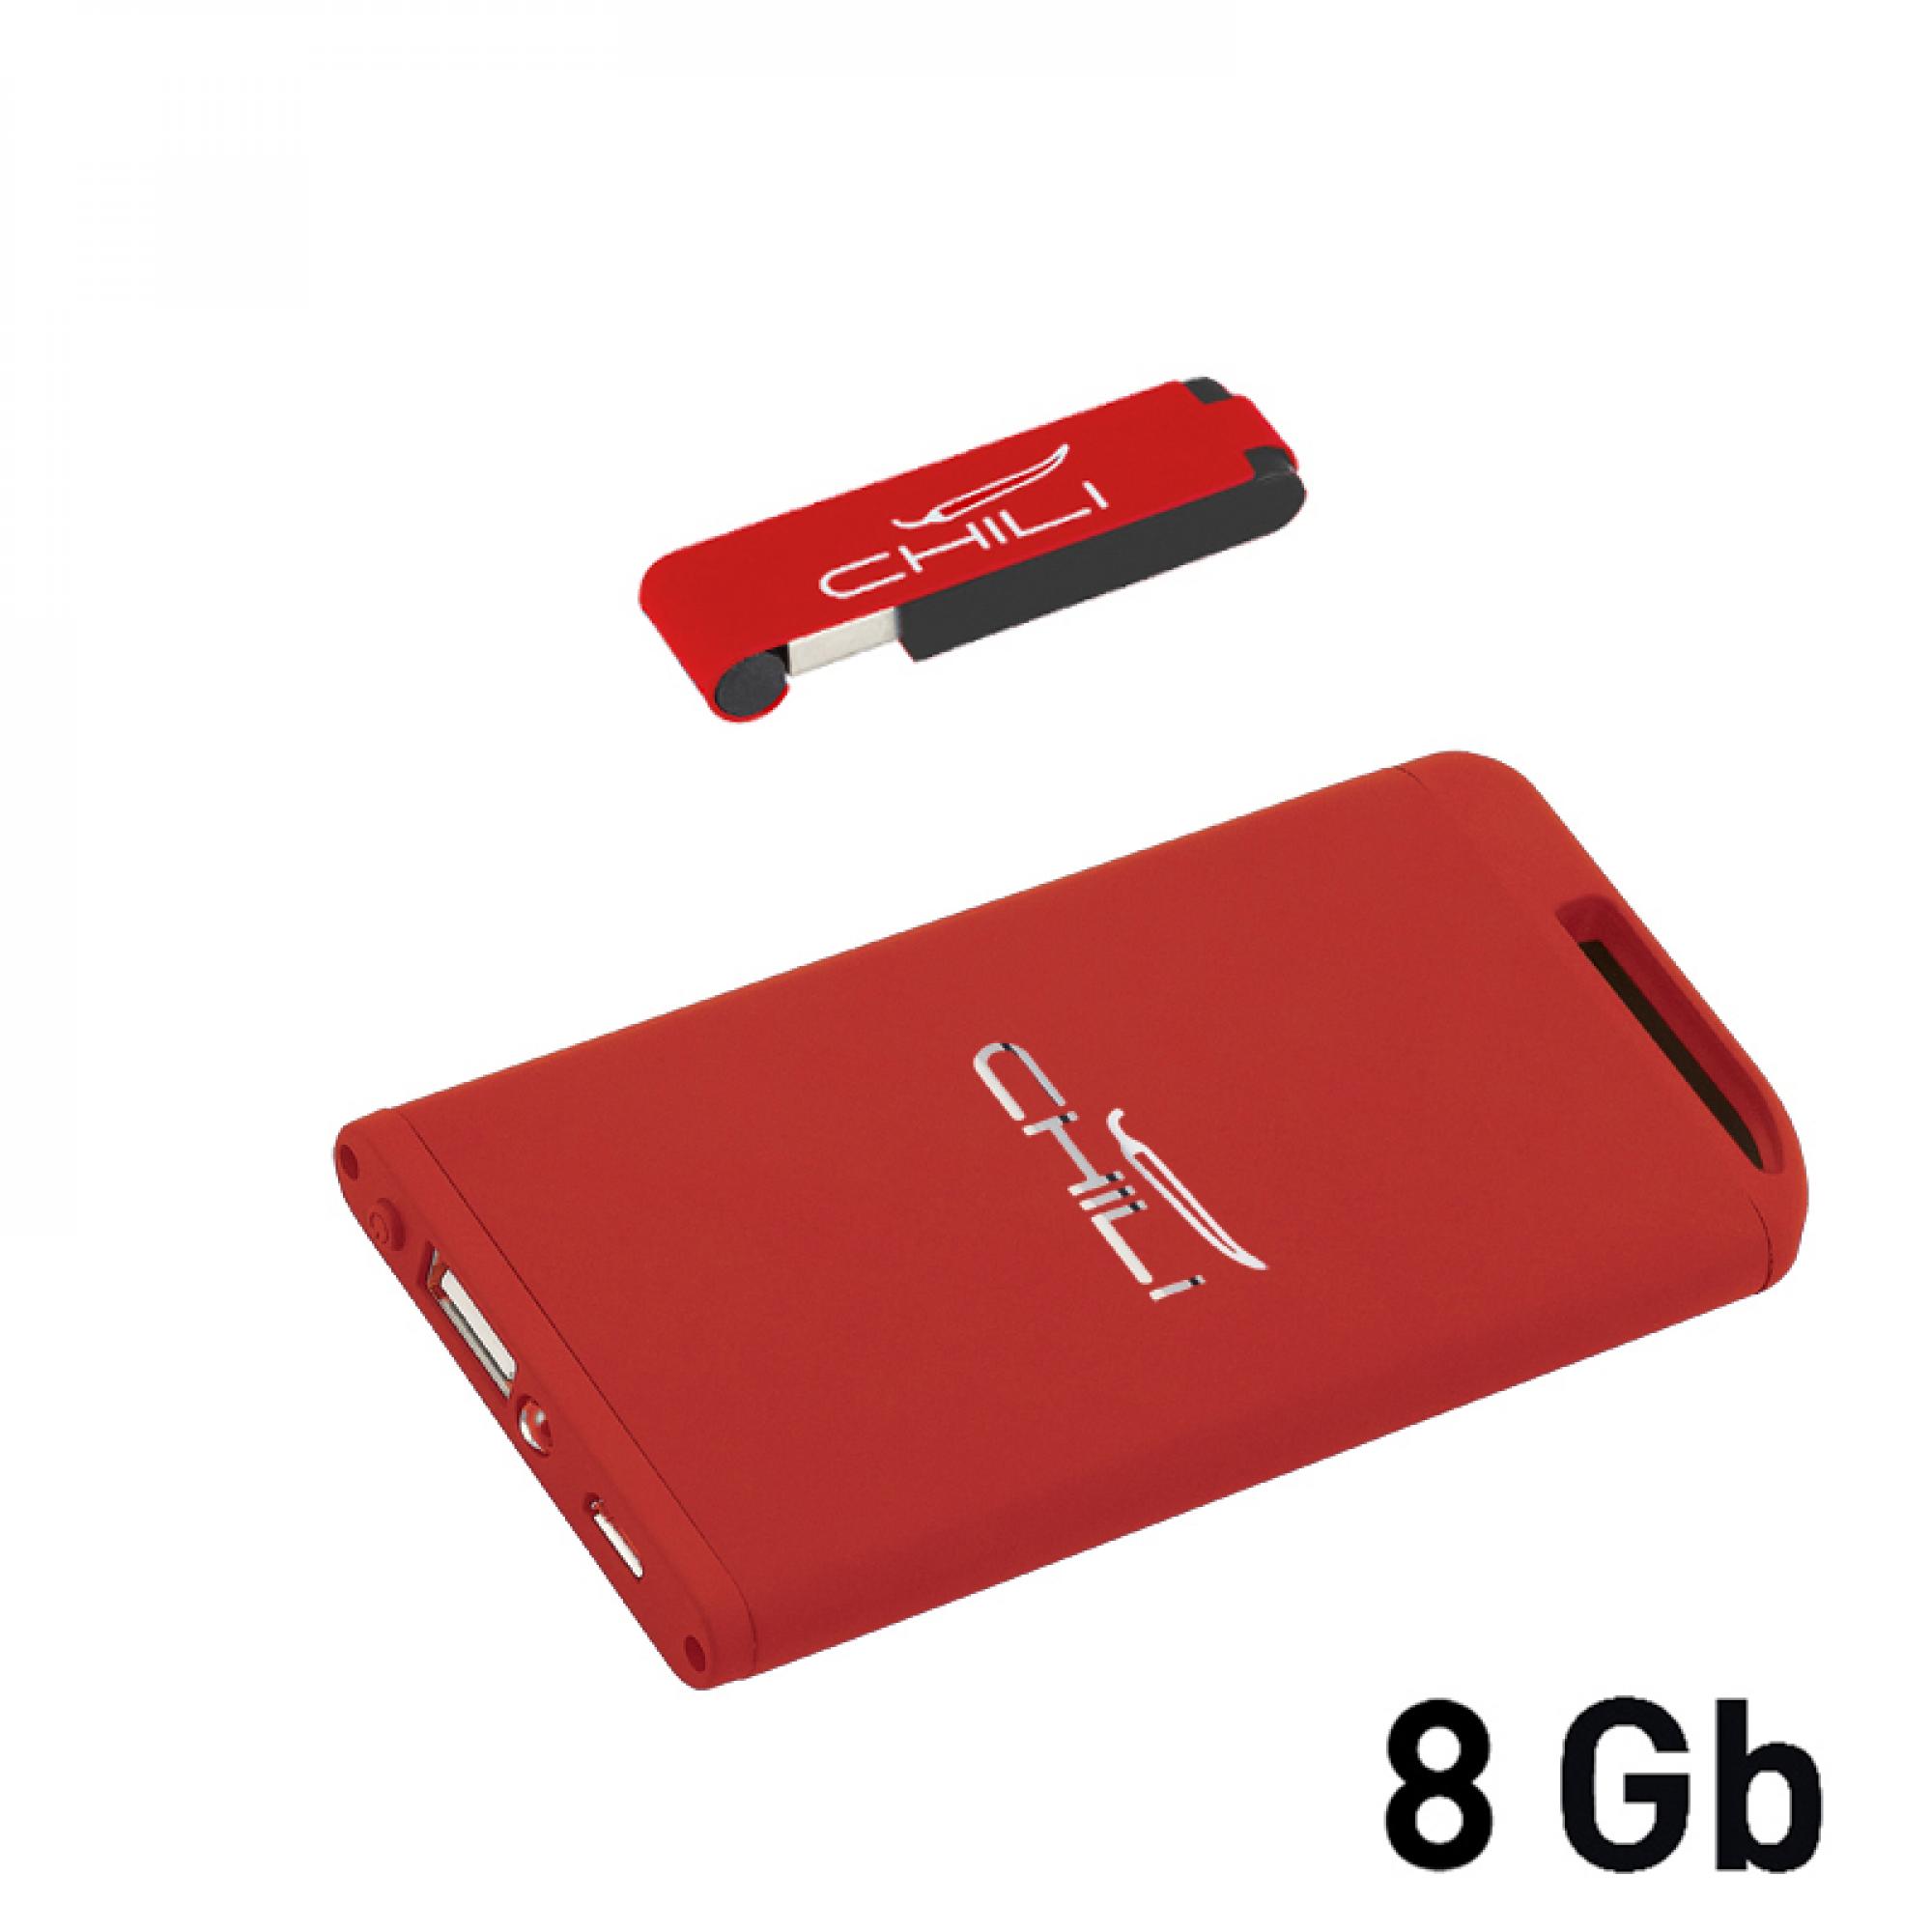 Набор зарядное устройство "Theta" 4000 mAh + флеш-карта "Case" 8Гб в футляре, покрытие soft touch, цвет красный с черным, фото 3